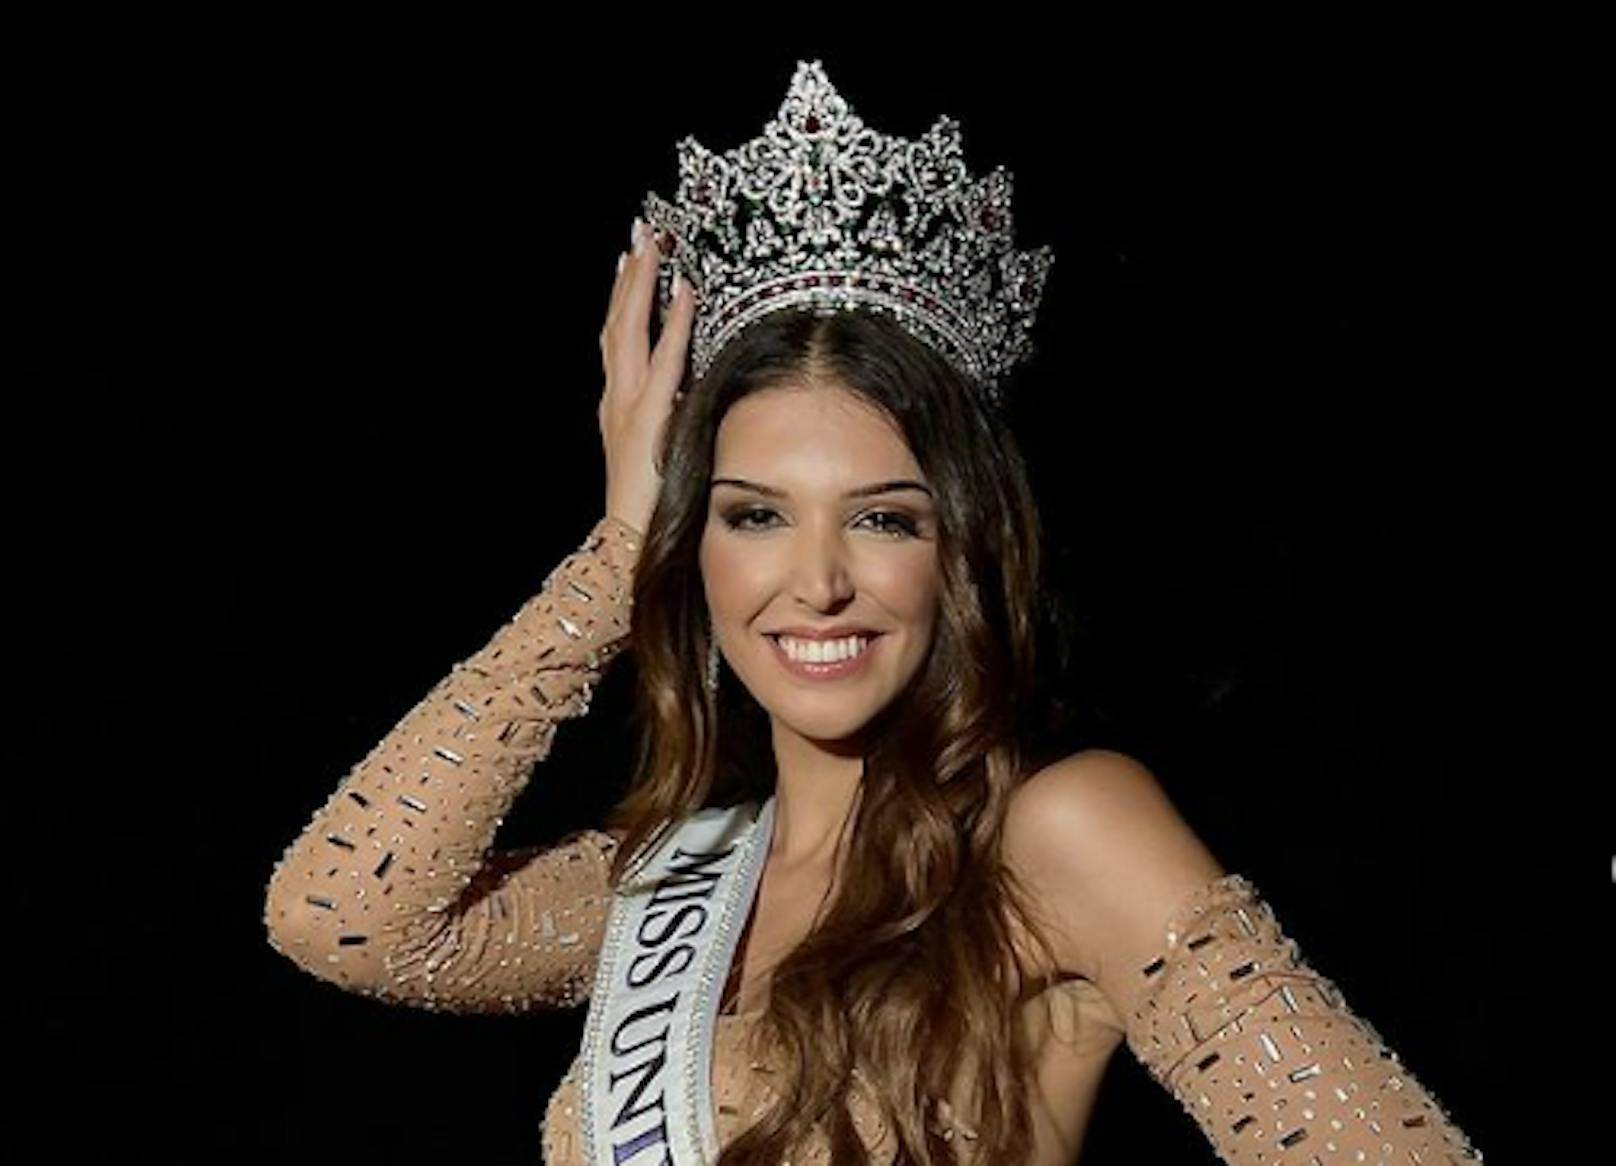 Transfrau gewinnt erstmals die Wahl zur Miss Portugal